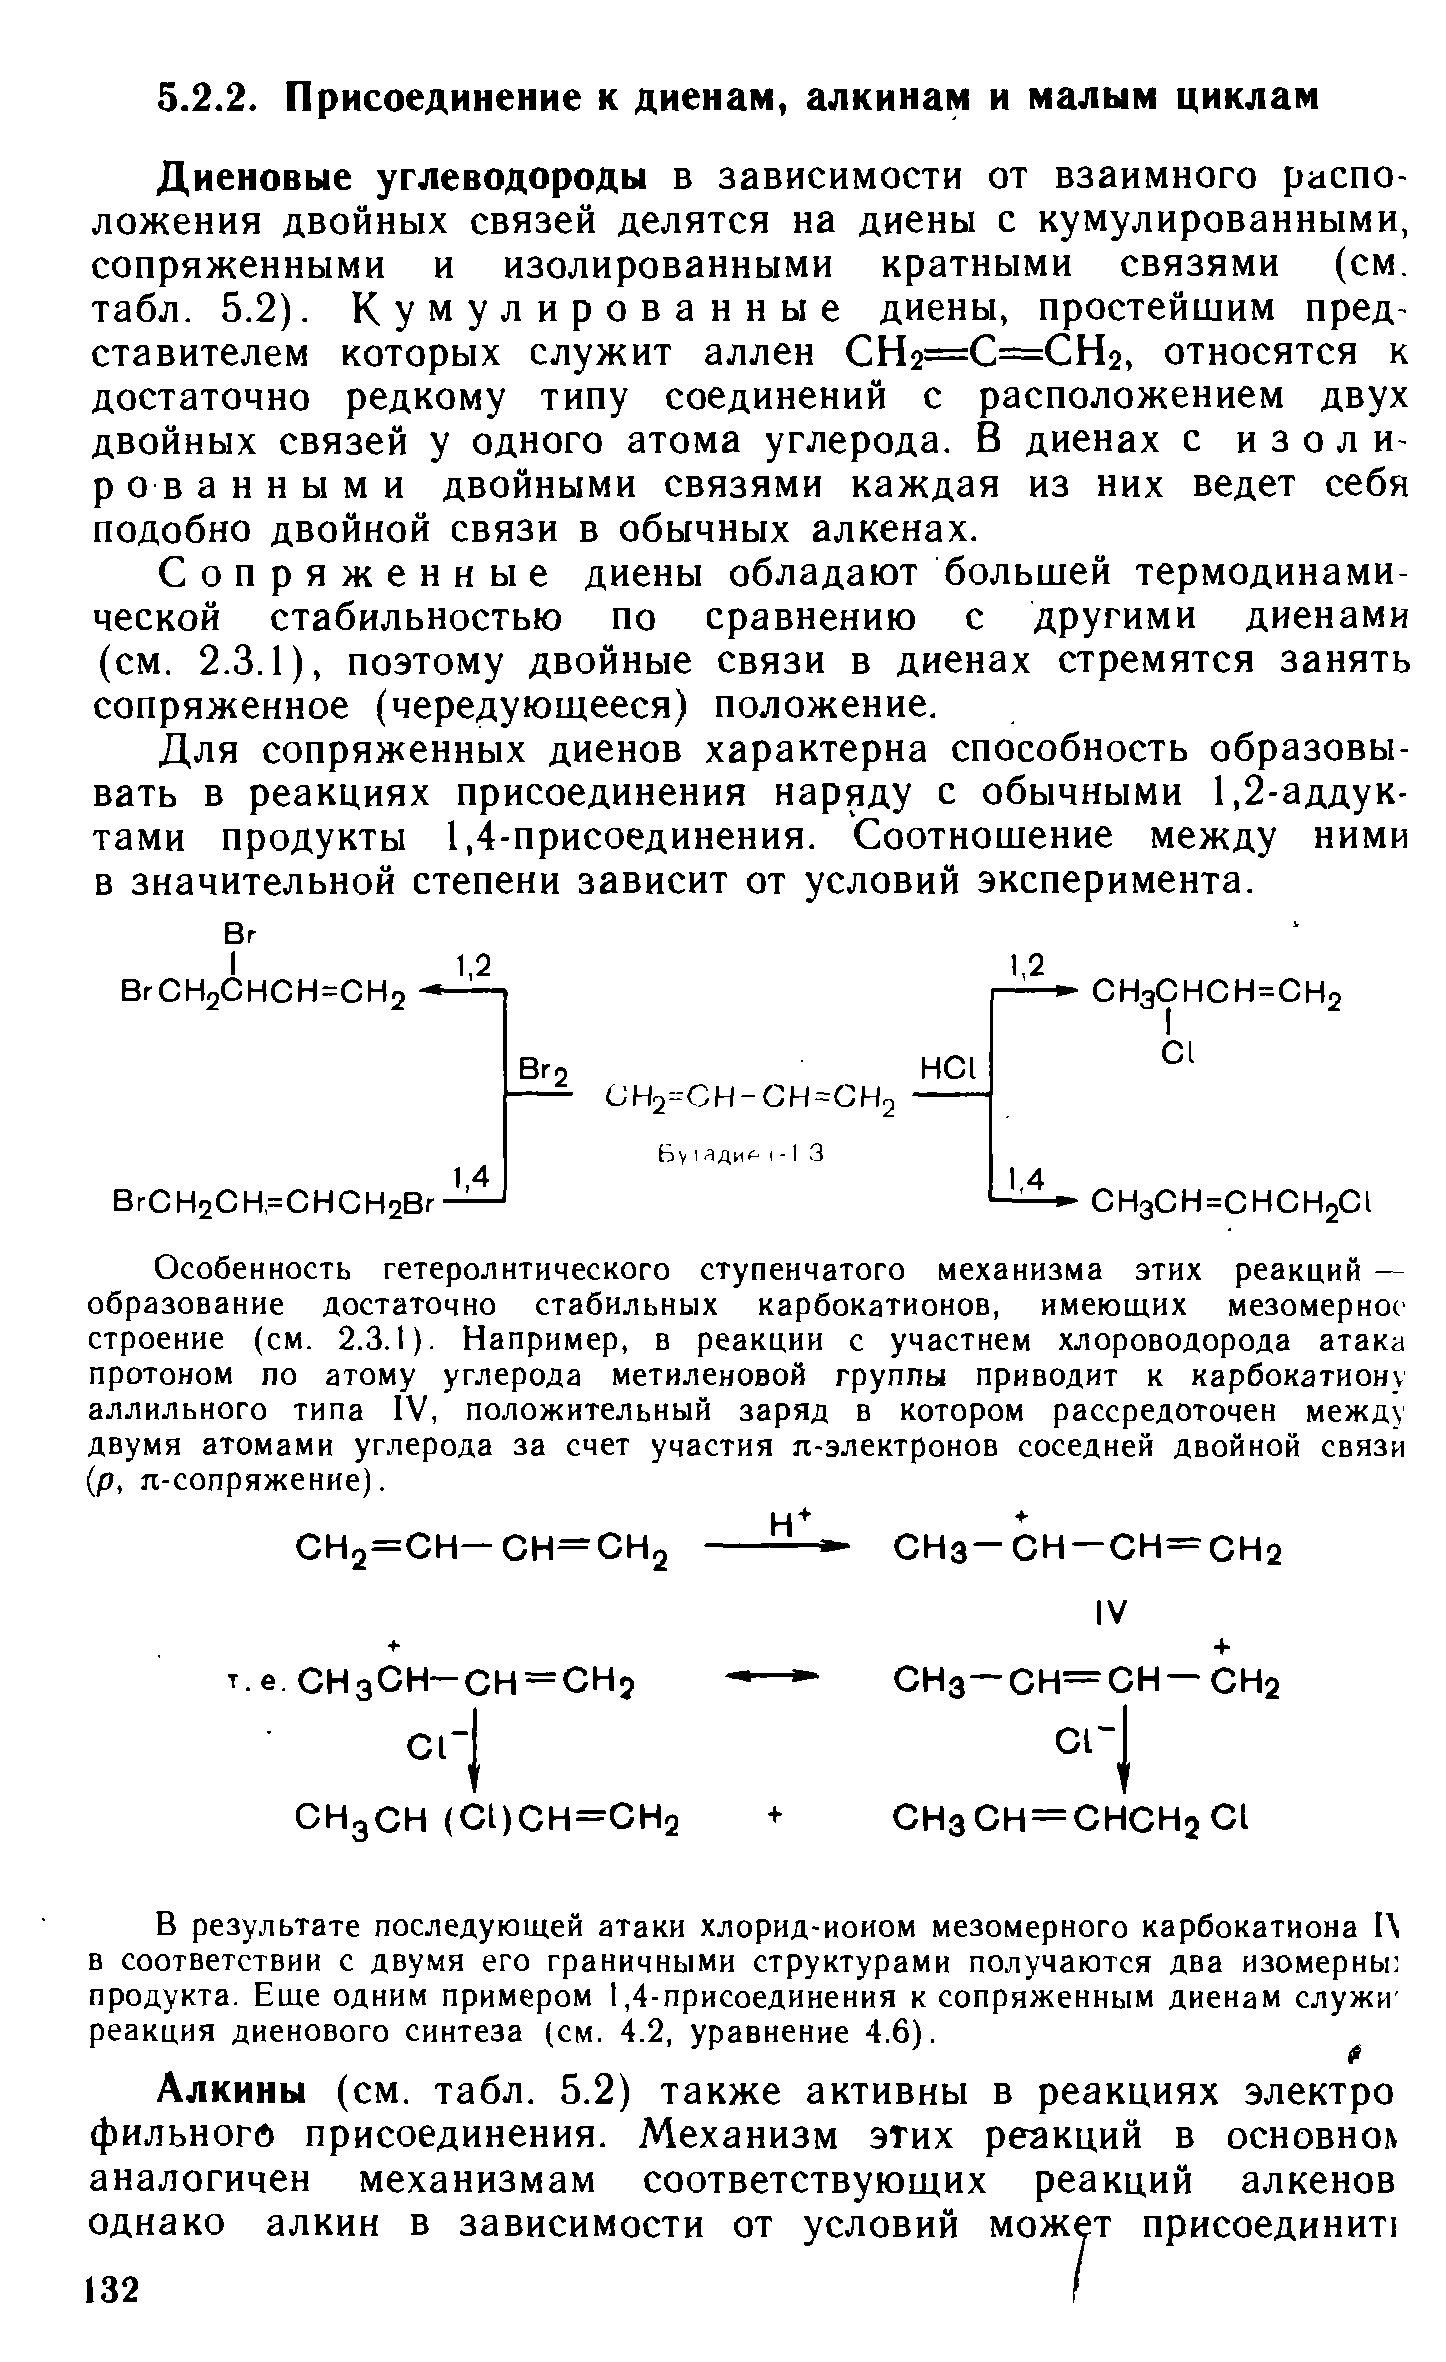 Диеновые углеводороды в зависимости от взаимного расположения двойных связей делятся на диены с кумулированными, сопряженными и изолированными кратными связями (см, табл. 5.2). Кумулированные диены, простейшим представителем которых служит аллен СН2=С=СН2, относятся к достаточно редкому типу соединений с расположением двух двойных связей у одного атома углерода. В диенах с изолированными двойными связями каждая из них ведет себя подобно двойной связи в обычных алканах.